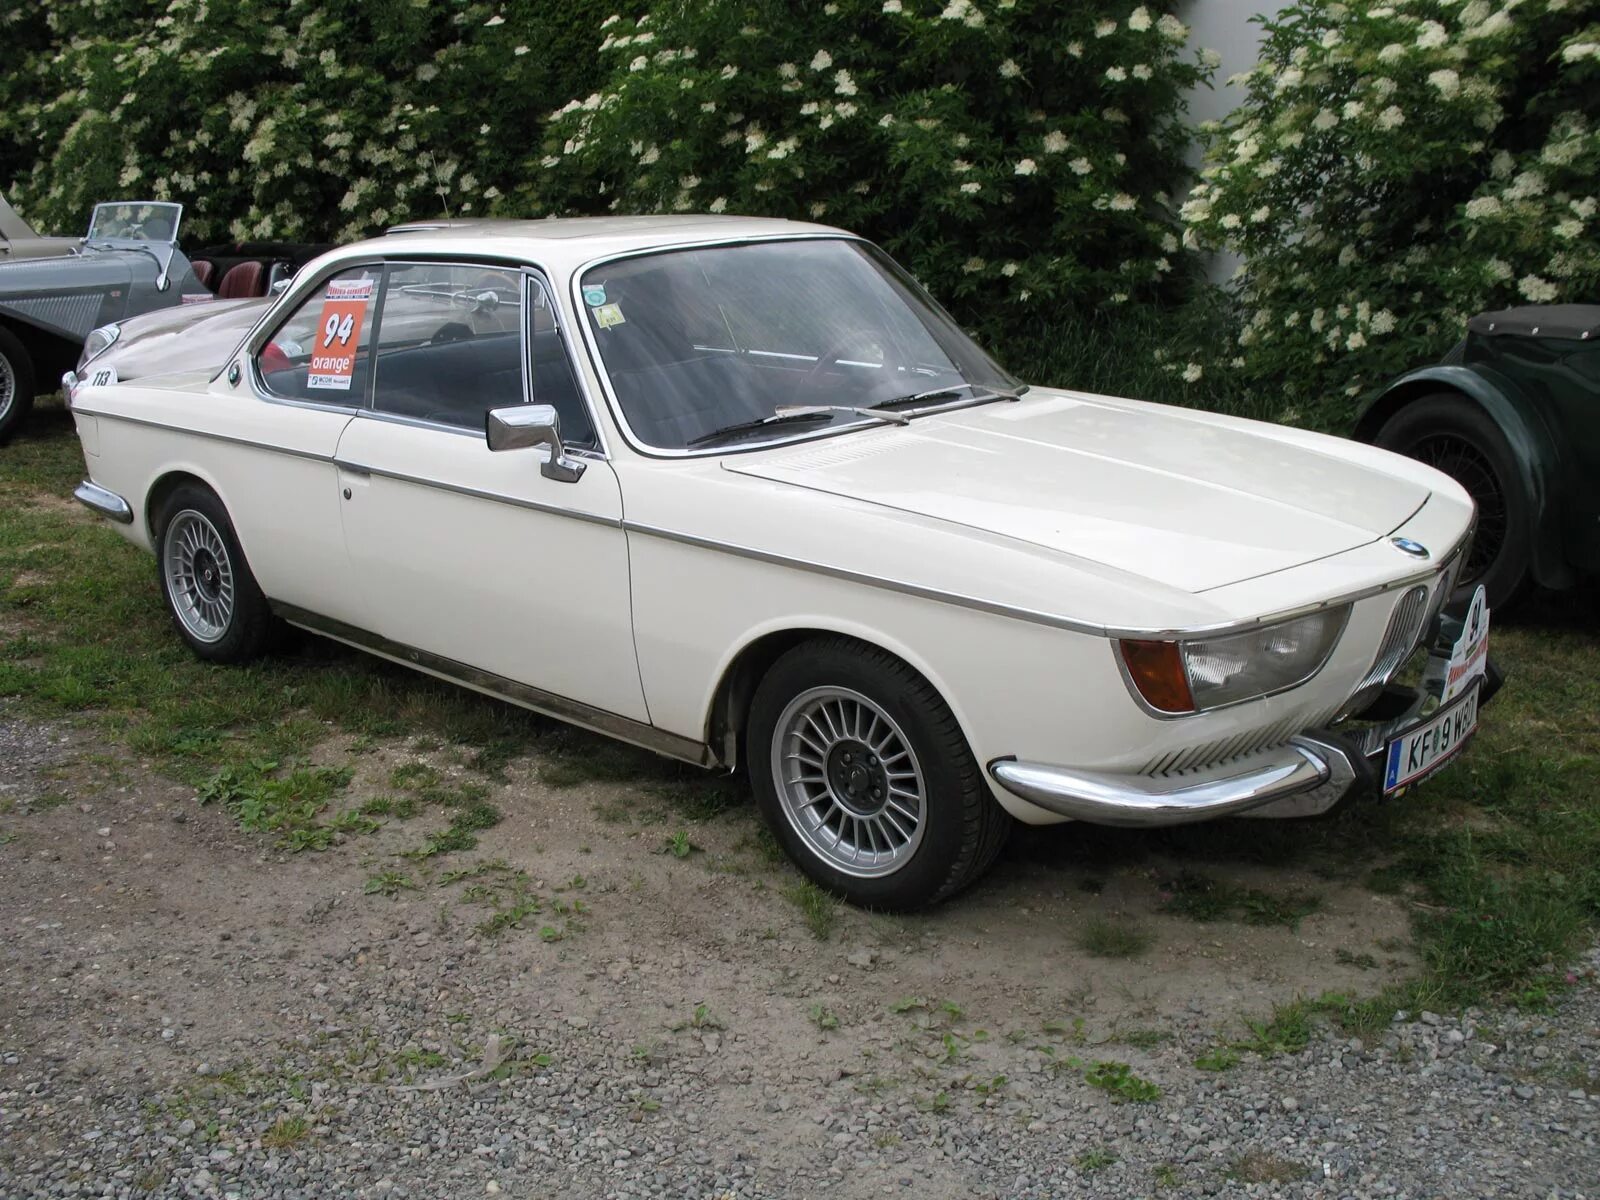 BMW 2000 C/CS. BMW 2000 CS 1966. BMW 2000 CS 1968. "BMW" "2000 C/CS" "1967" EF. Купить бмв 2000 года